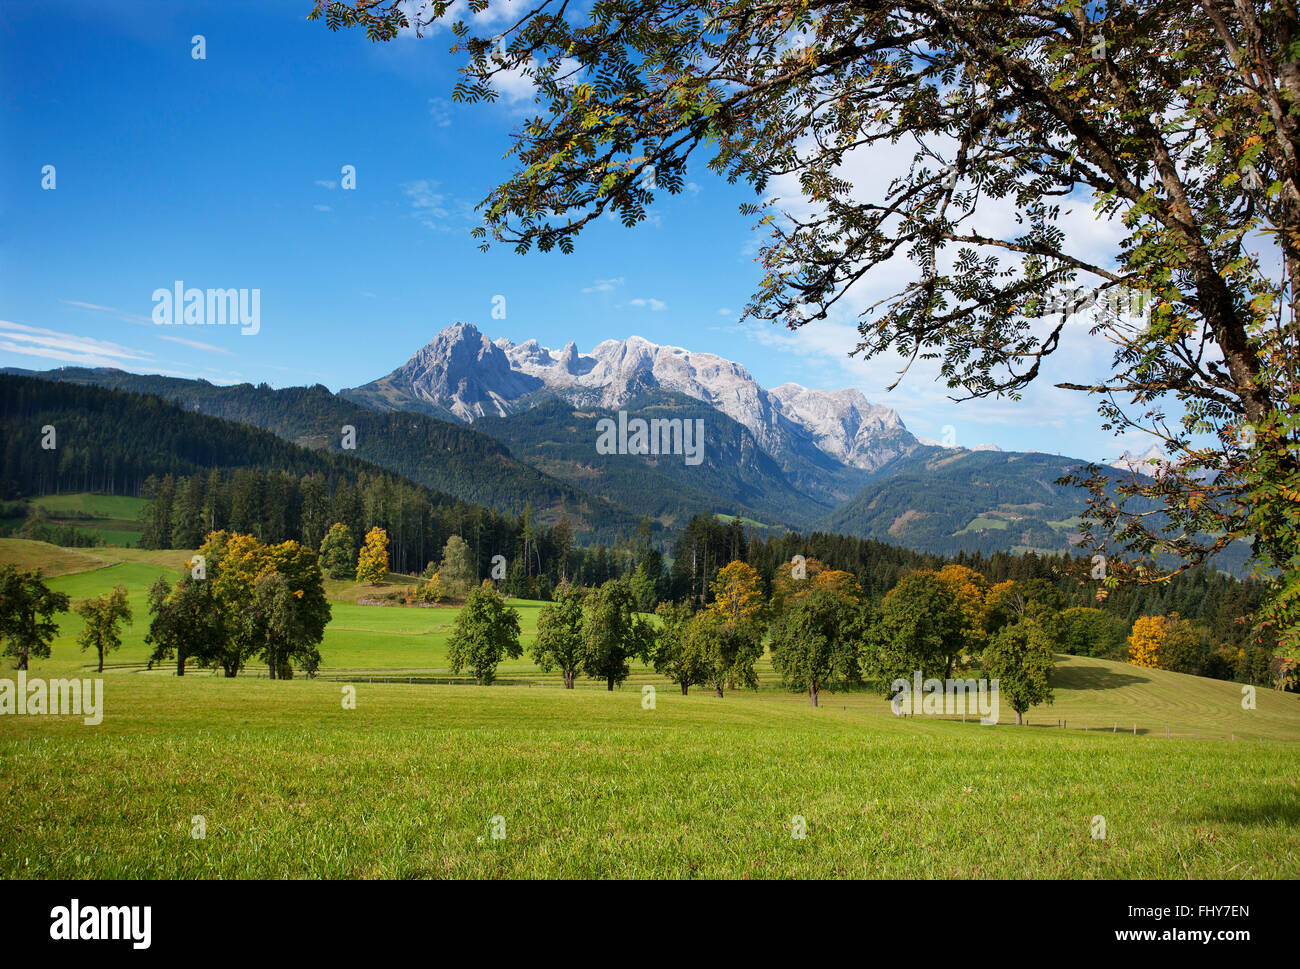 Austria, Salzburg State, Pongau, Werfenweng, mountain pasture, Hochkoenig in the background Stock Photo